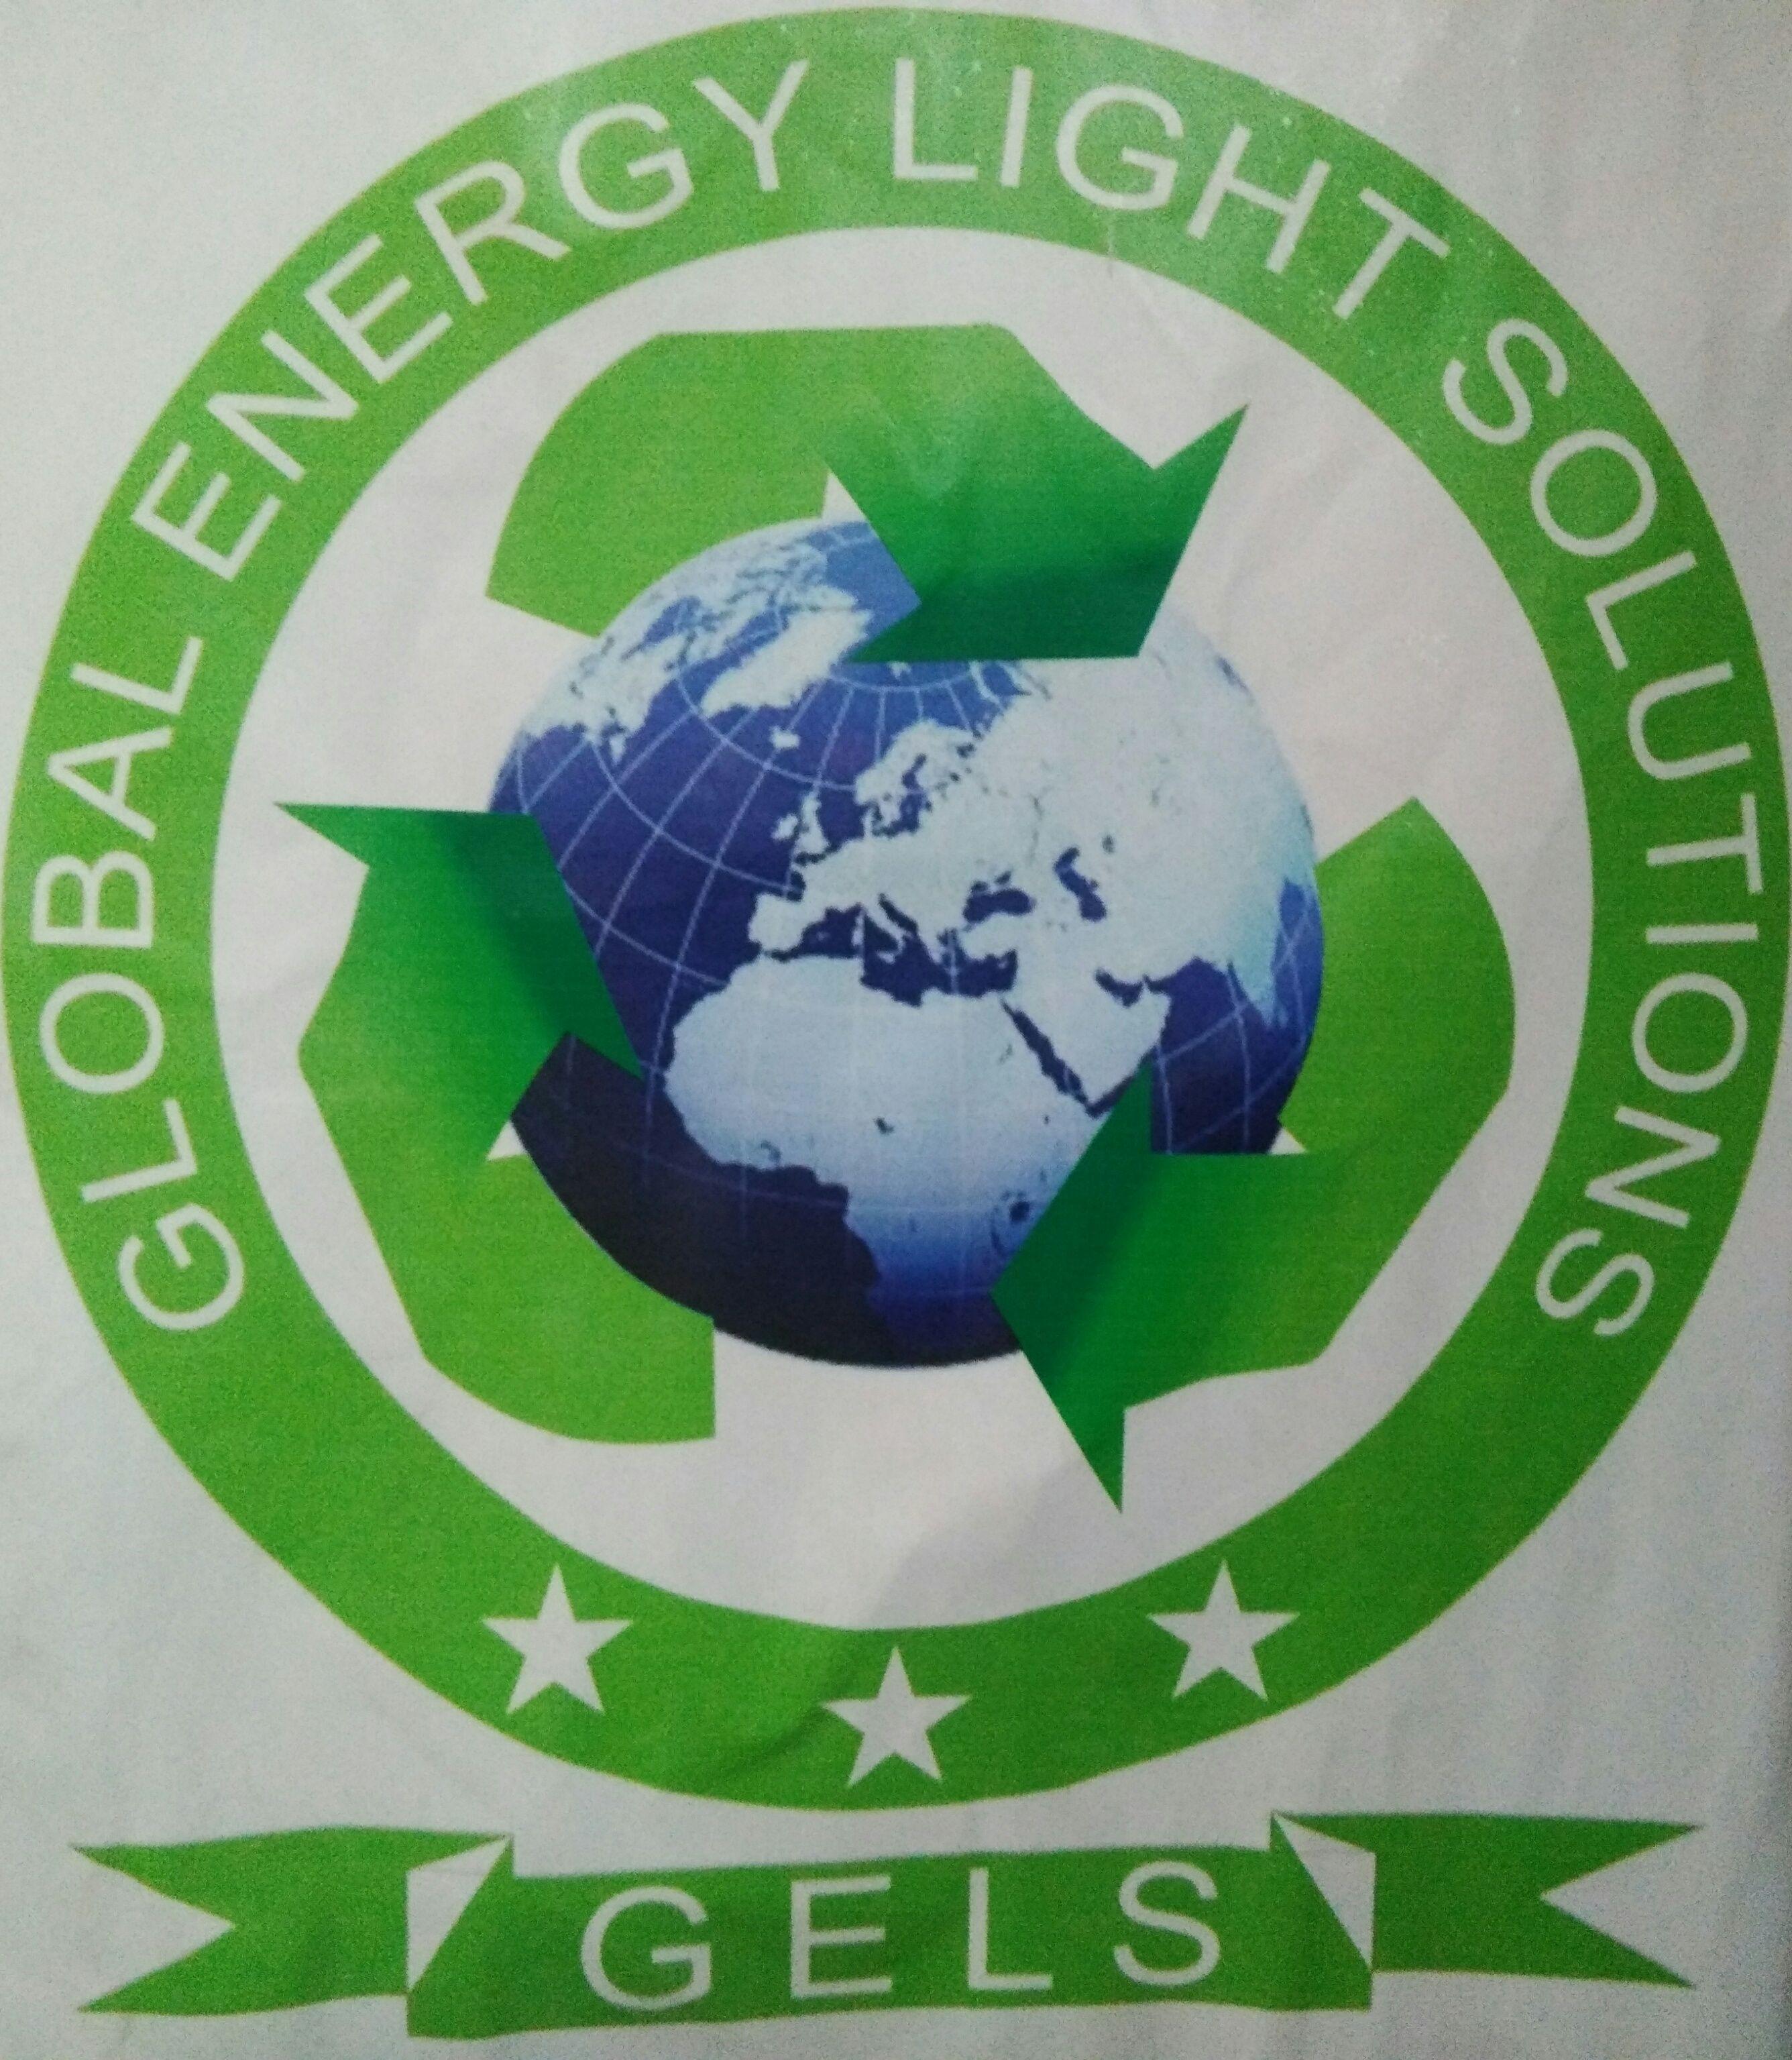 Global Energy Light Solutions